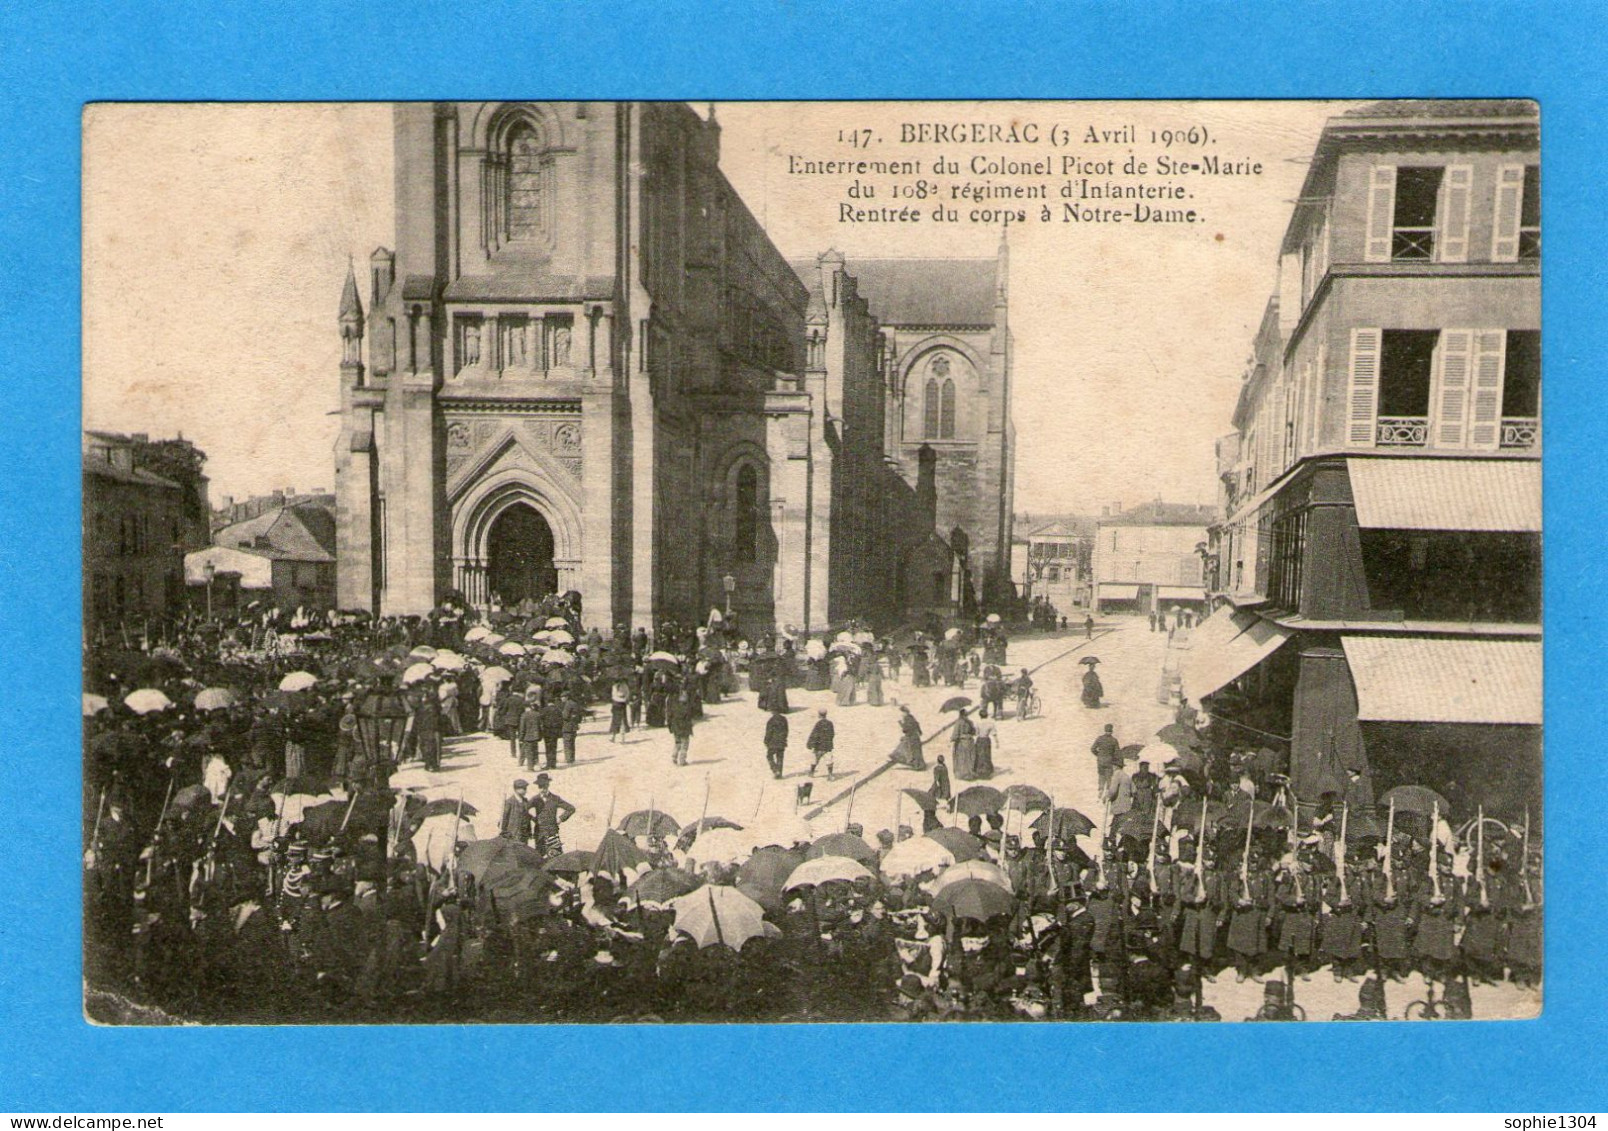 BERGERAC - Enterrement Du Colonel Picot De Ste-Marie Du 108 è Régiment D'Infanterie - Rentrée Du Corps à Notre-Dame - Bergerac